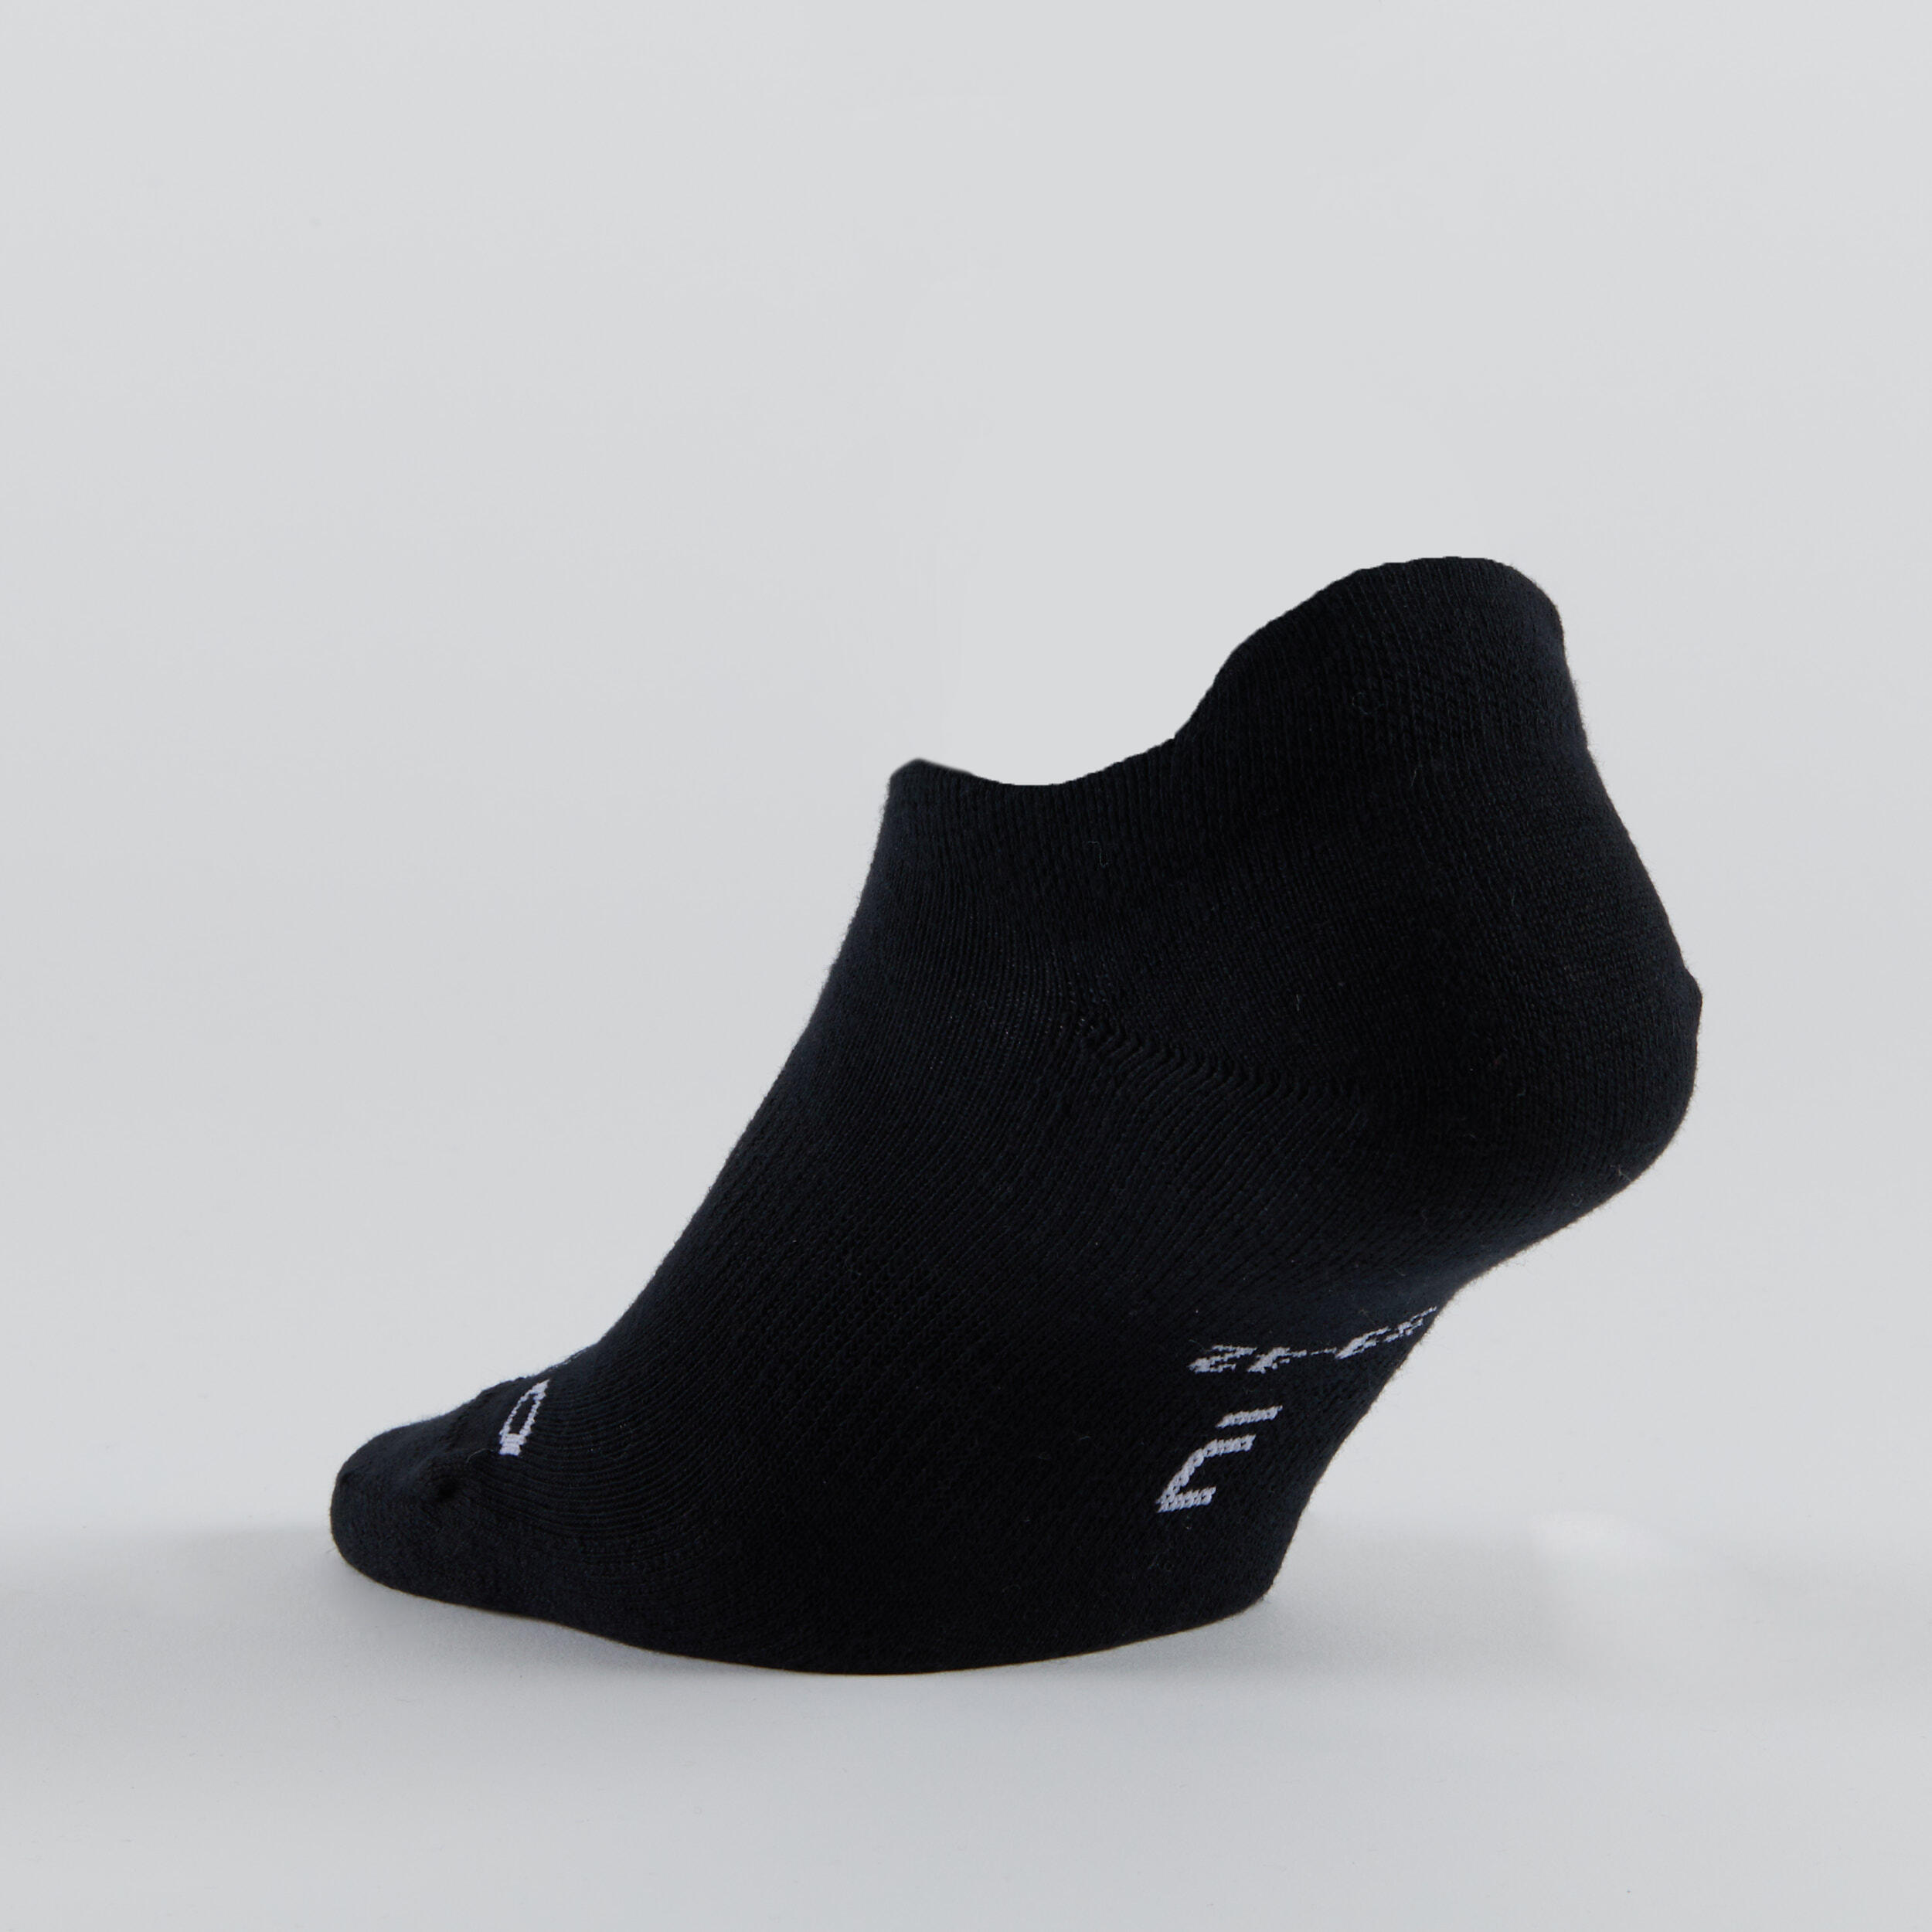 Low Sports Socks Tri-Pack RS 160 - Beige Print/Brown/Black 10/14